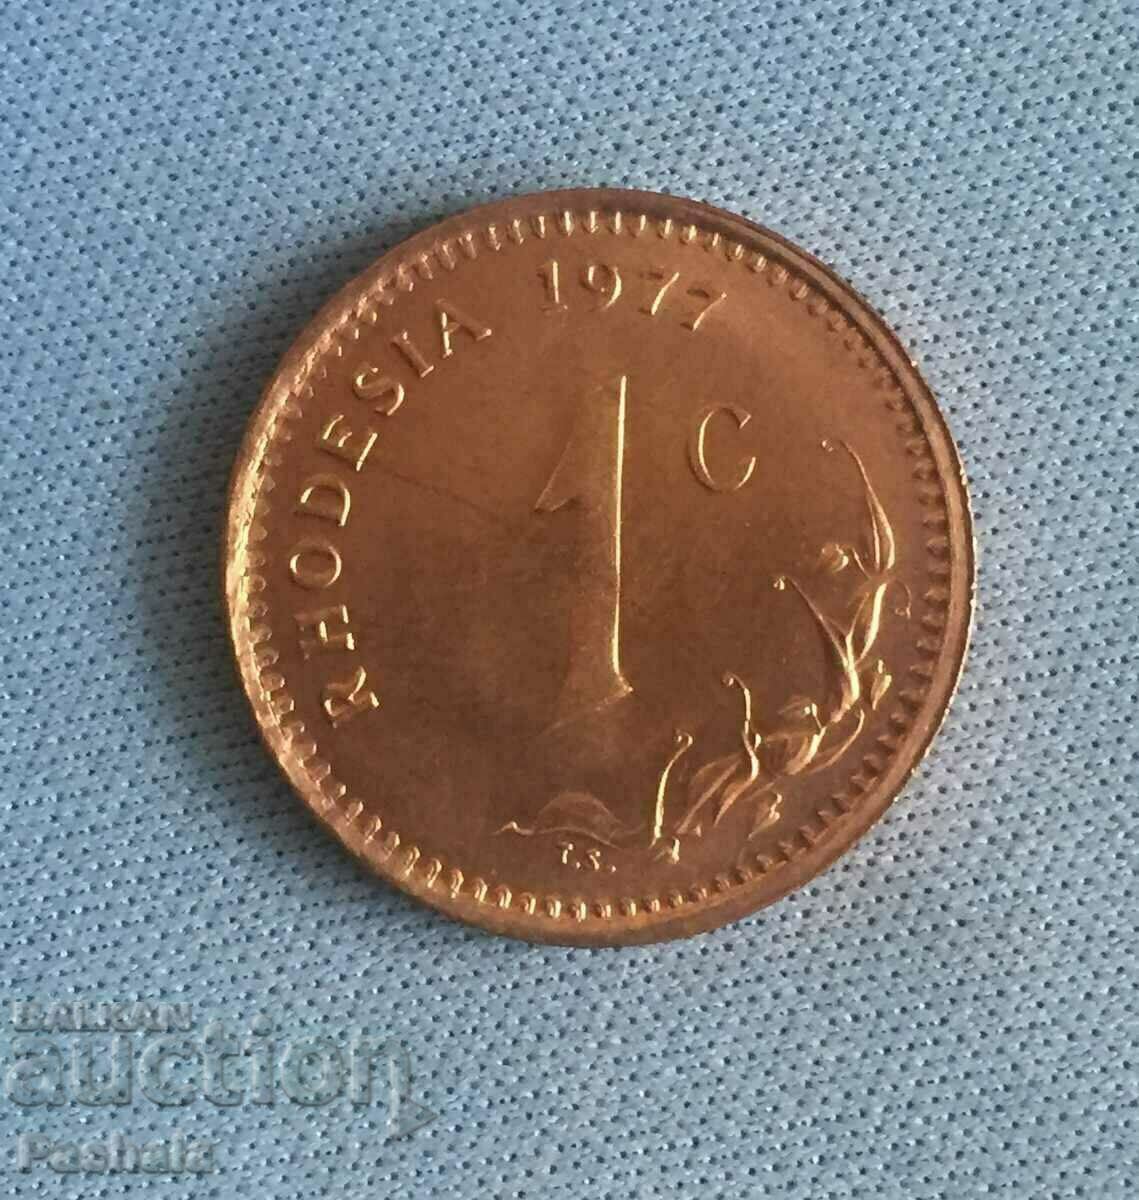 Ροδεσία 1 cent 1977